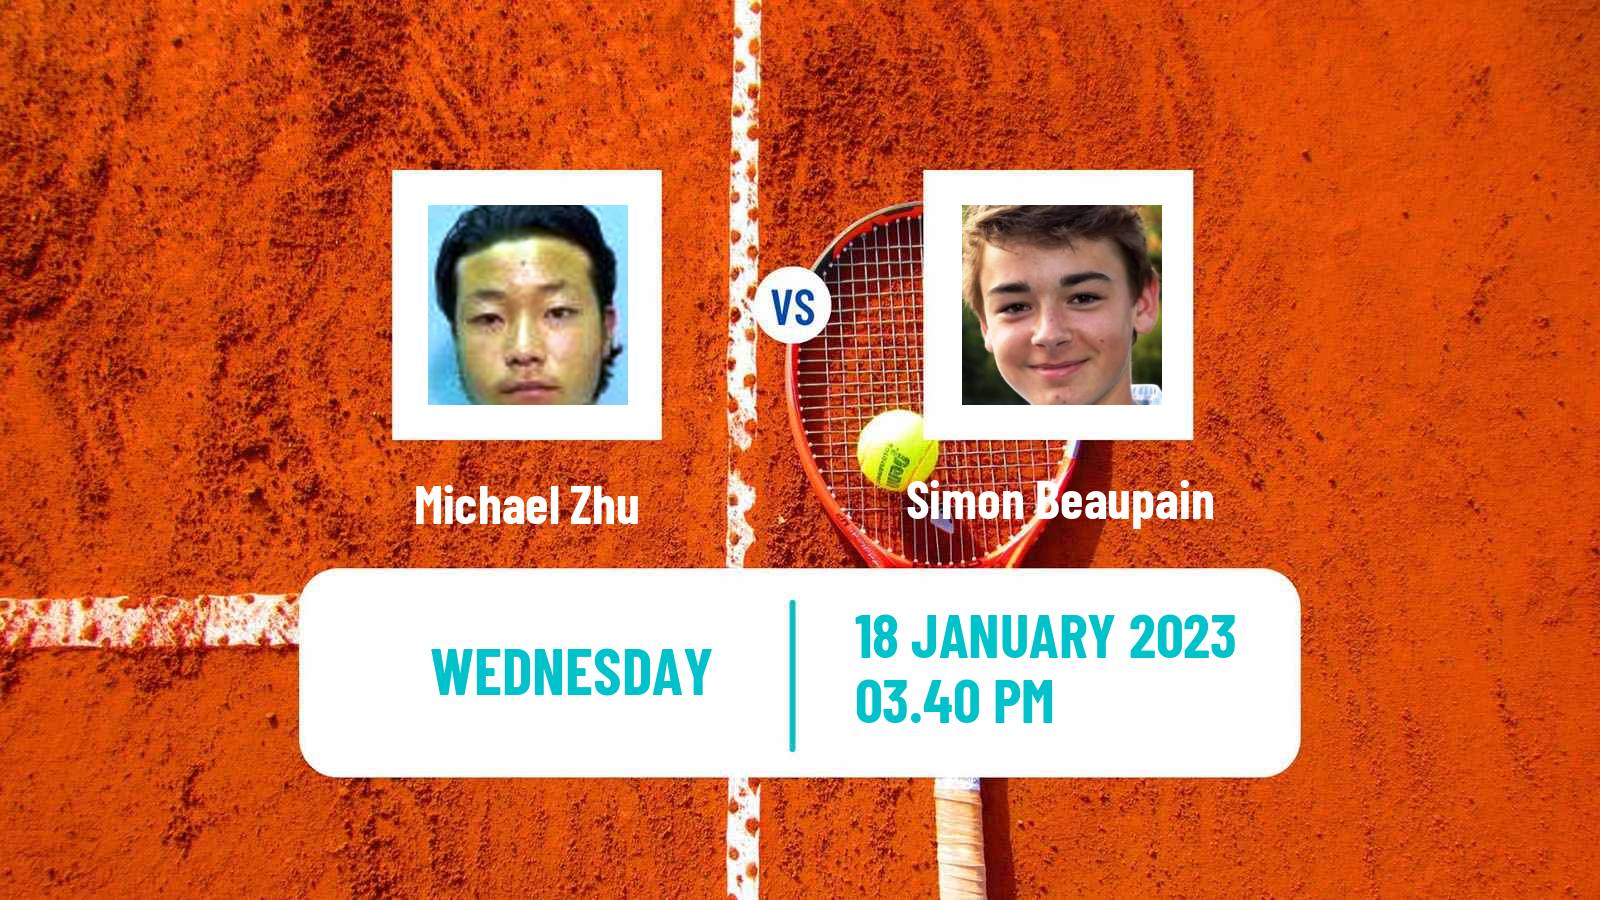 Tennis ITF Tournaments Michael Zhu - Simon Beaupain